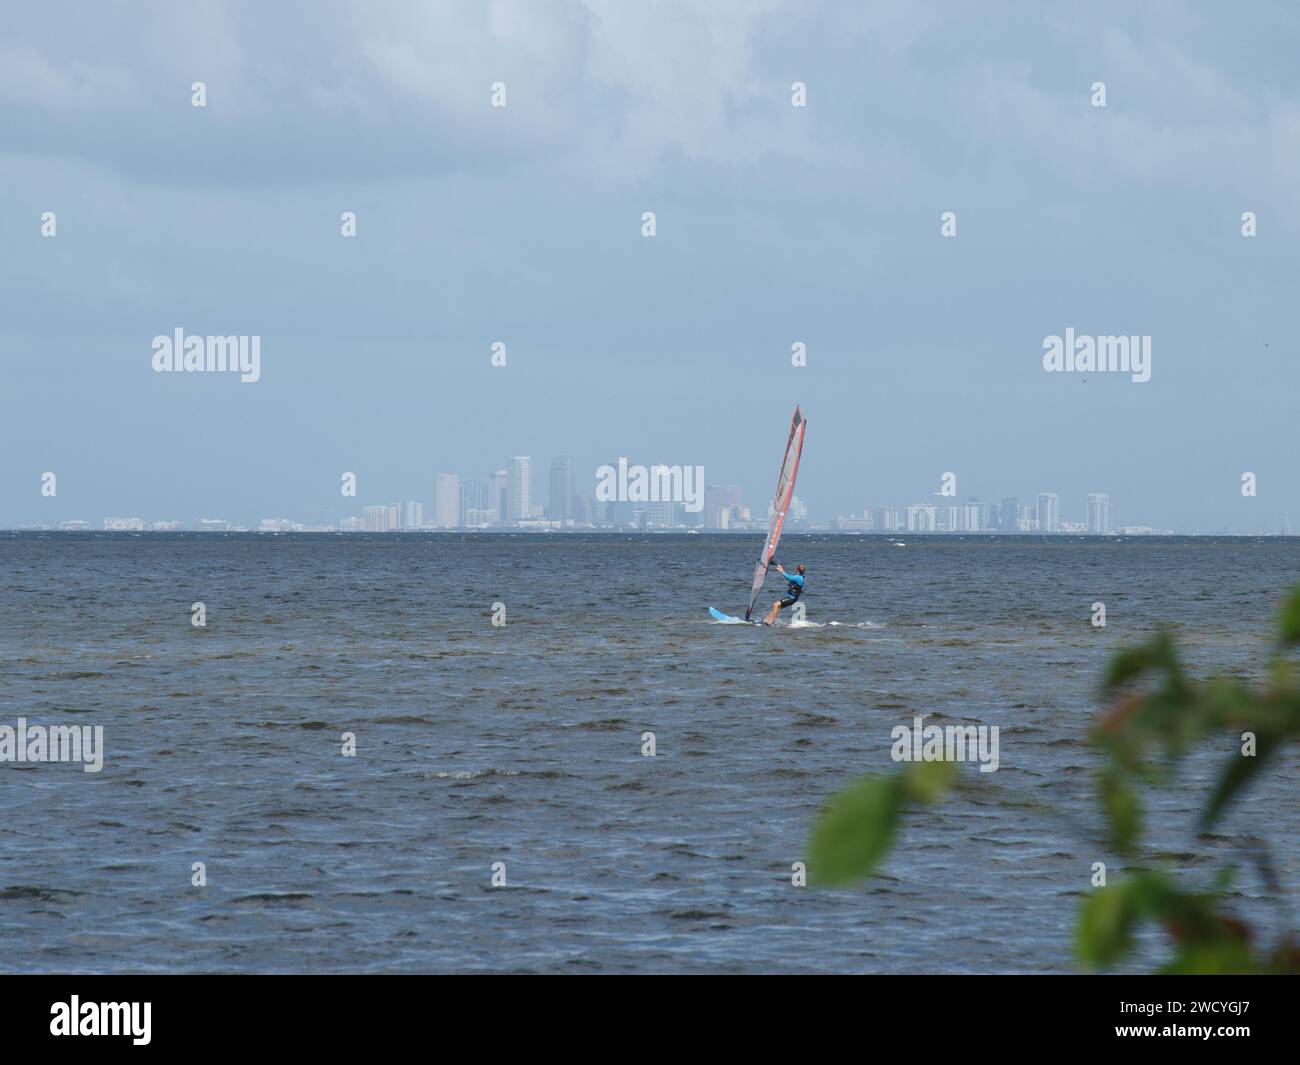 Tampa Bay, Florida, USA - 2. November 2022: Windsurfer in der Bucht mit Downtown Tampa im Hintergrund. Stockfoto